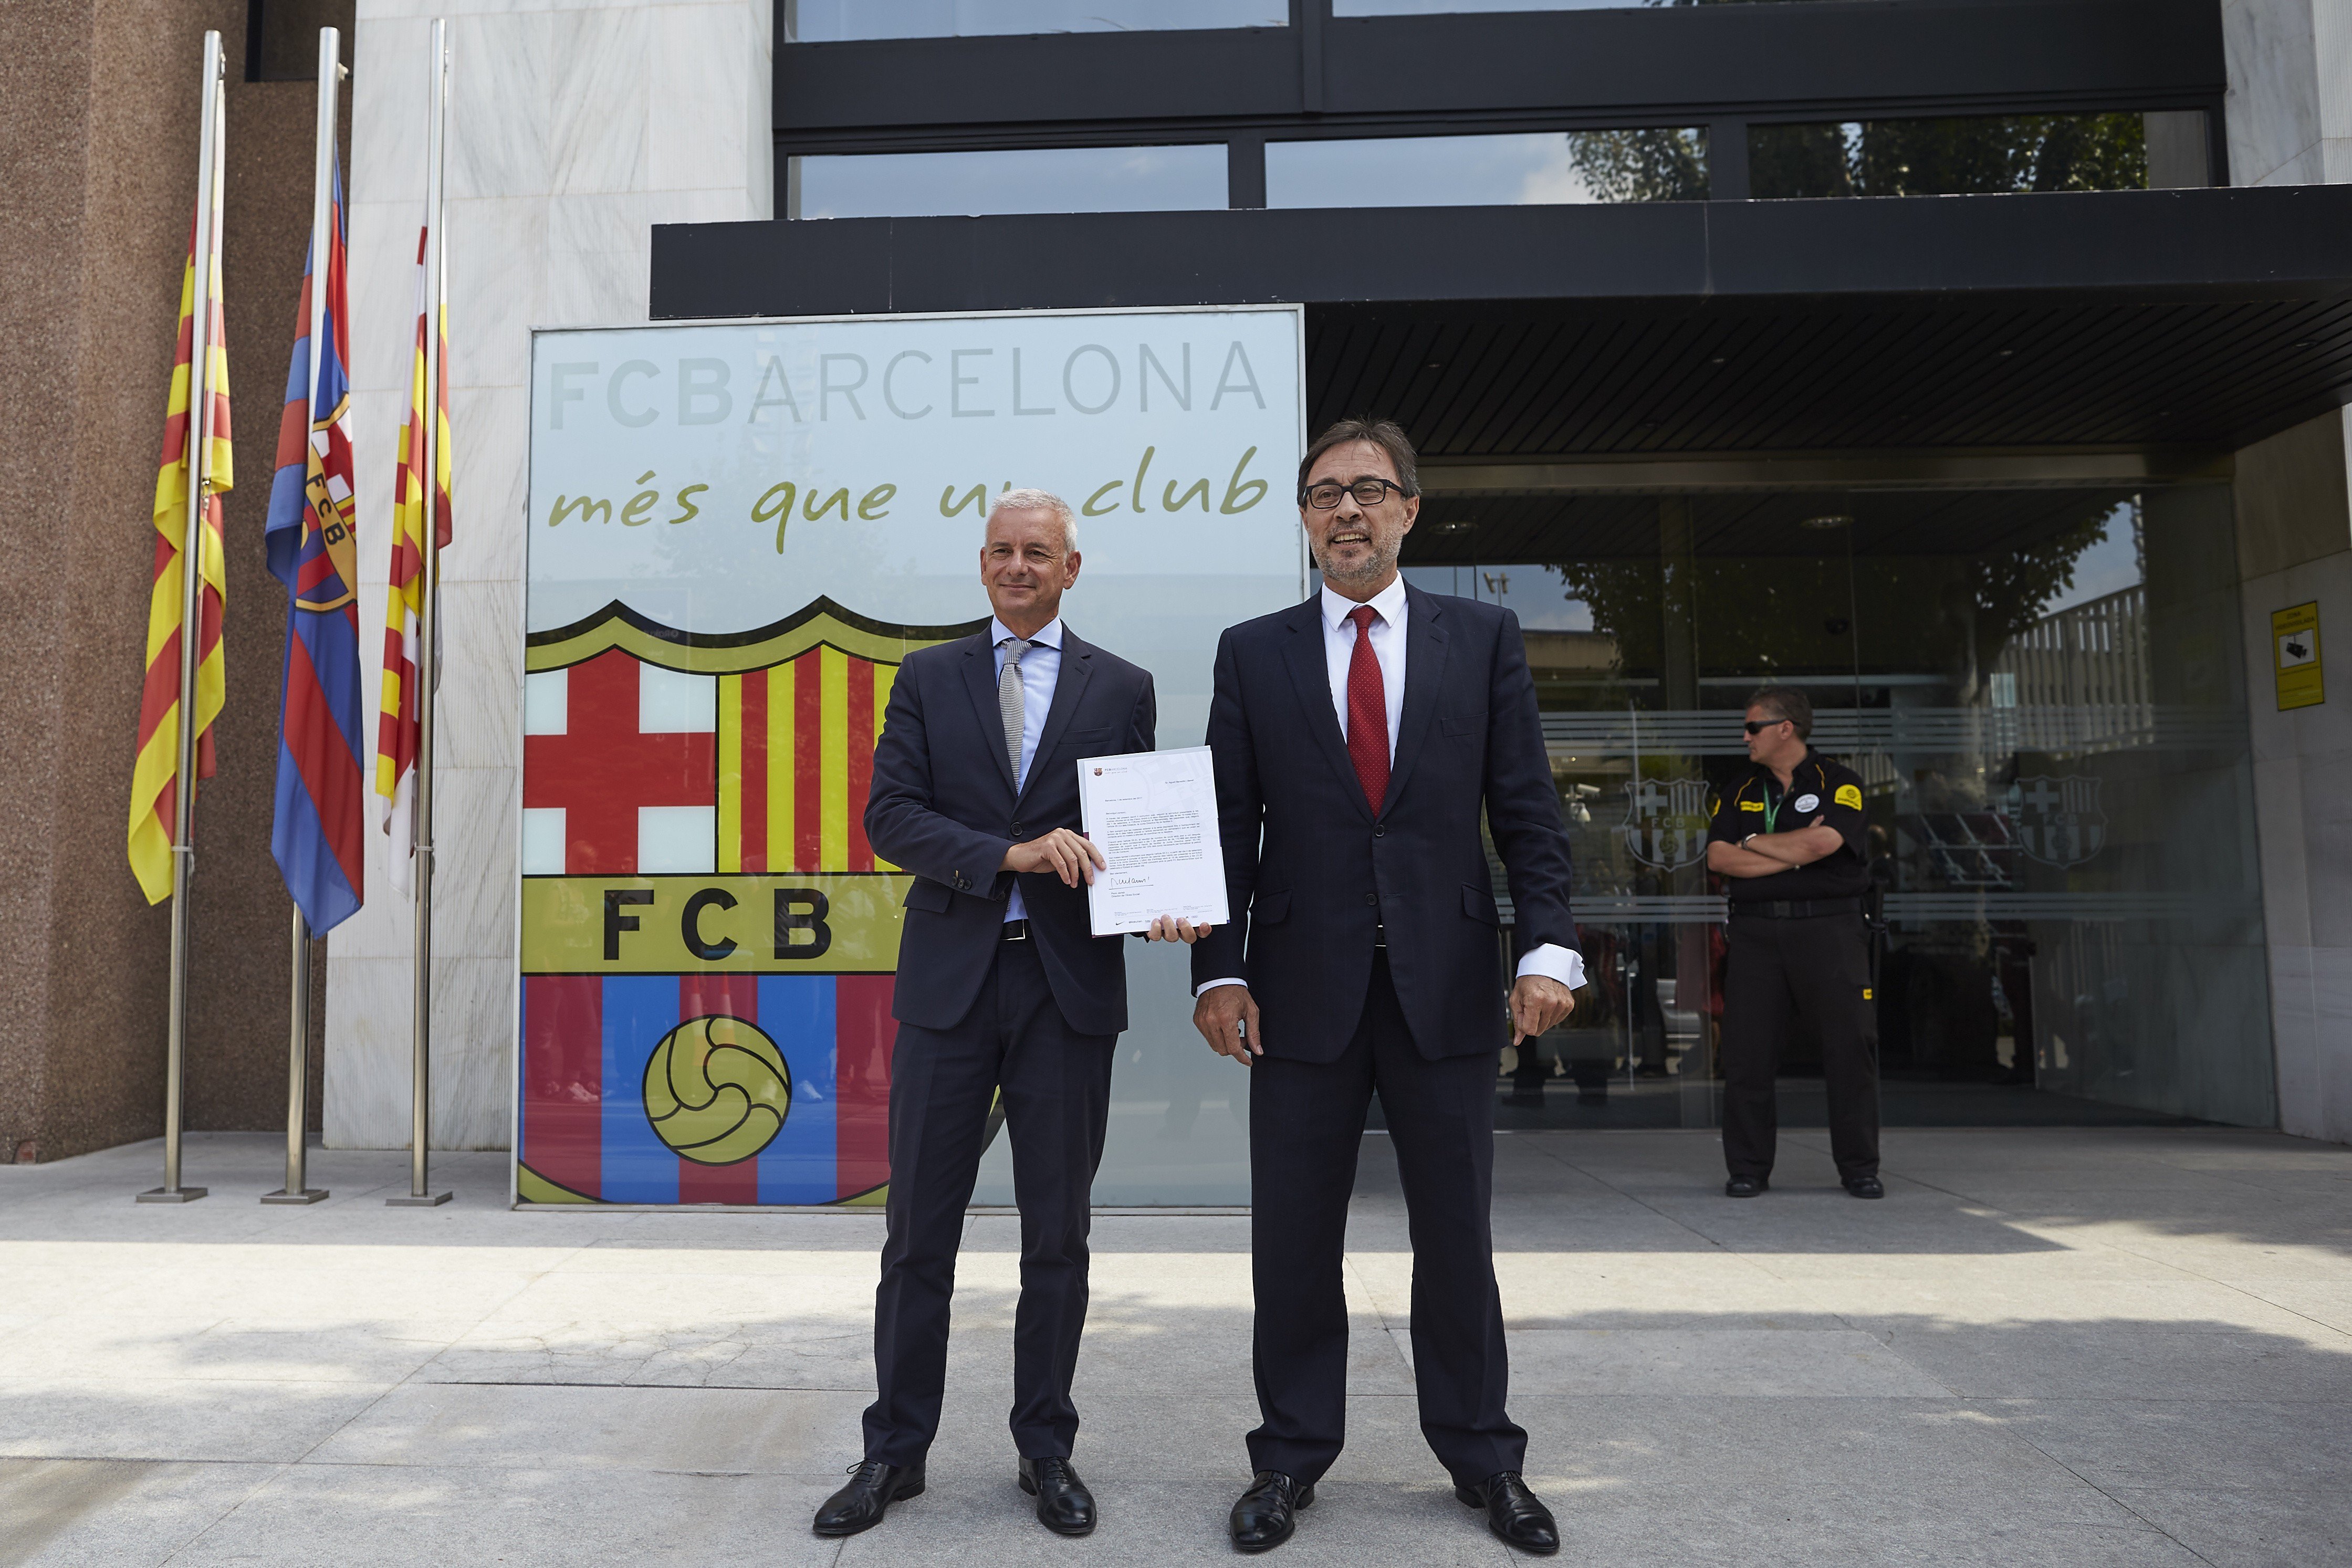 El Barça amplia el termini de la moció de censura fins al 27 de setembre